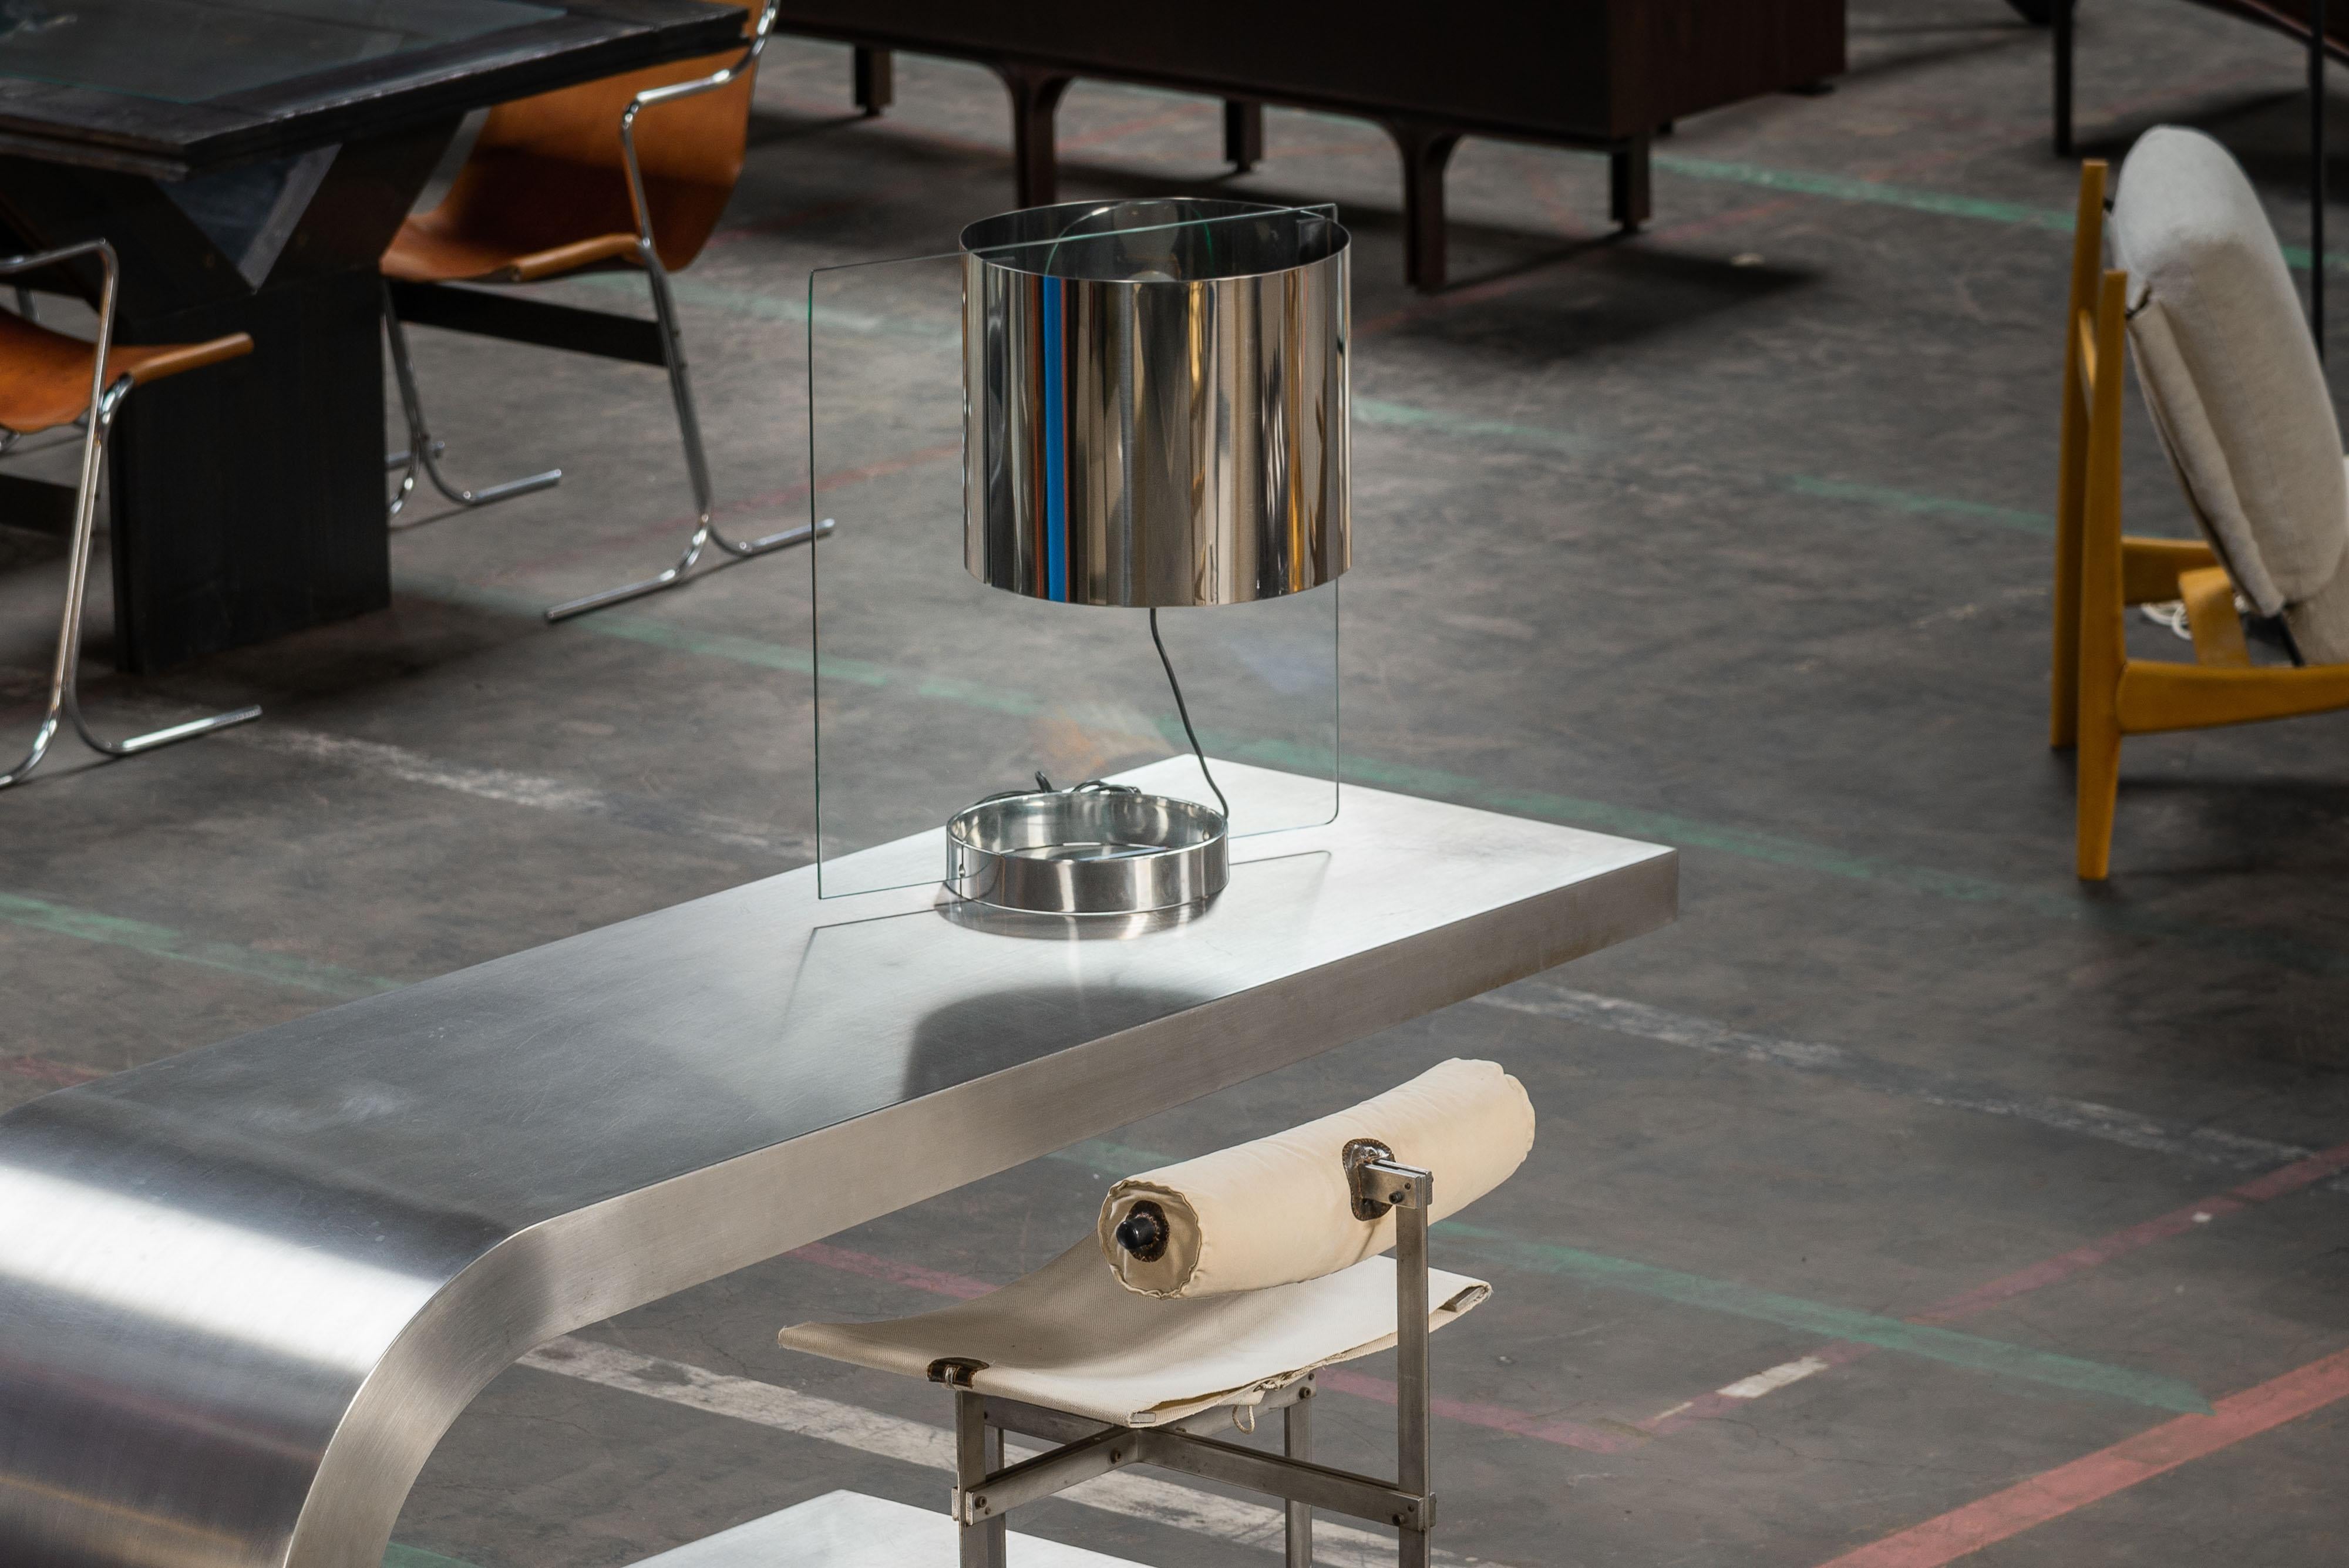 Seltene und beeindruckende Tischleuchte, entworfen von Ennio Chiggio und hergestellt von Lumenform in Italien im Jahr 1970. Es ist ziemlich einzigartig, weil es so aussieht, als würde der Chromschirm in der Luft schweben, aber in Wirklichkeit ist es